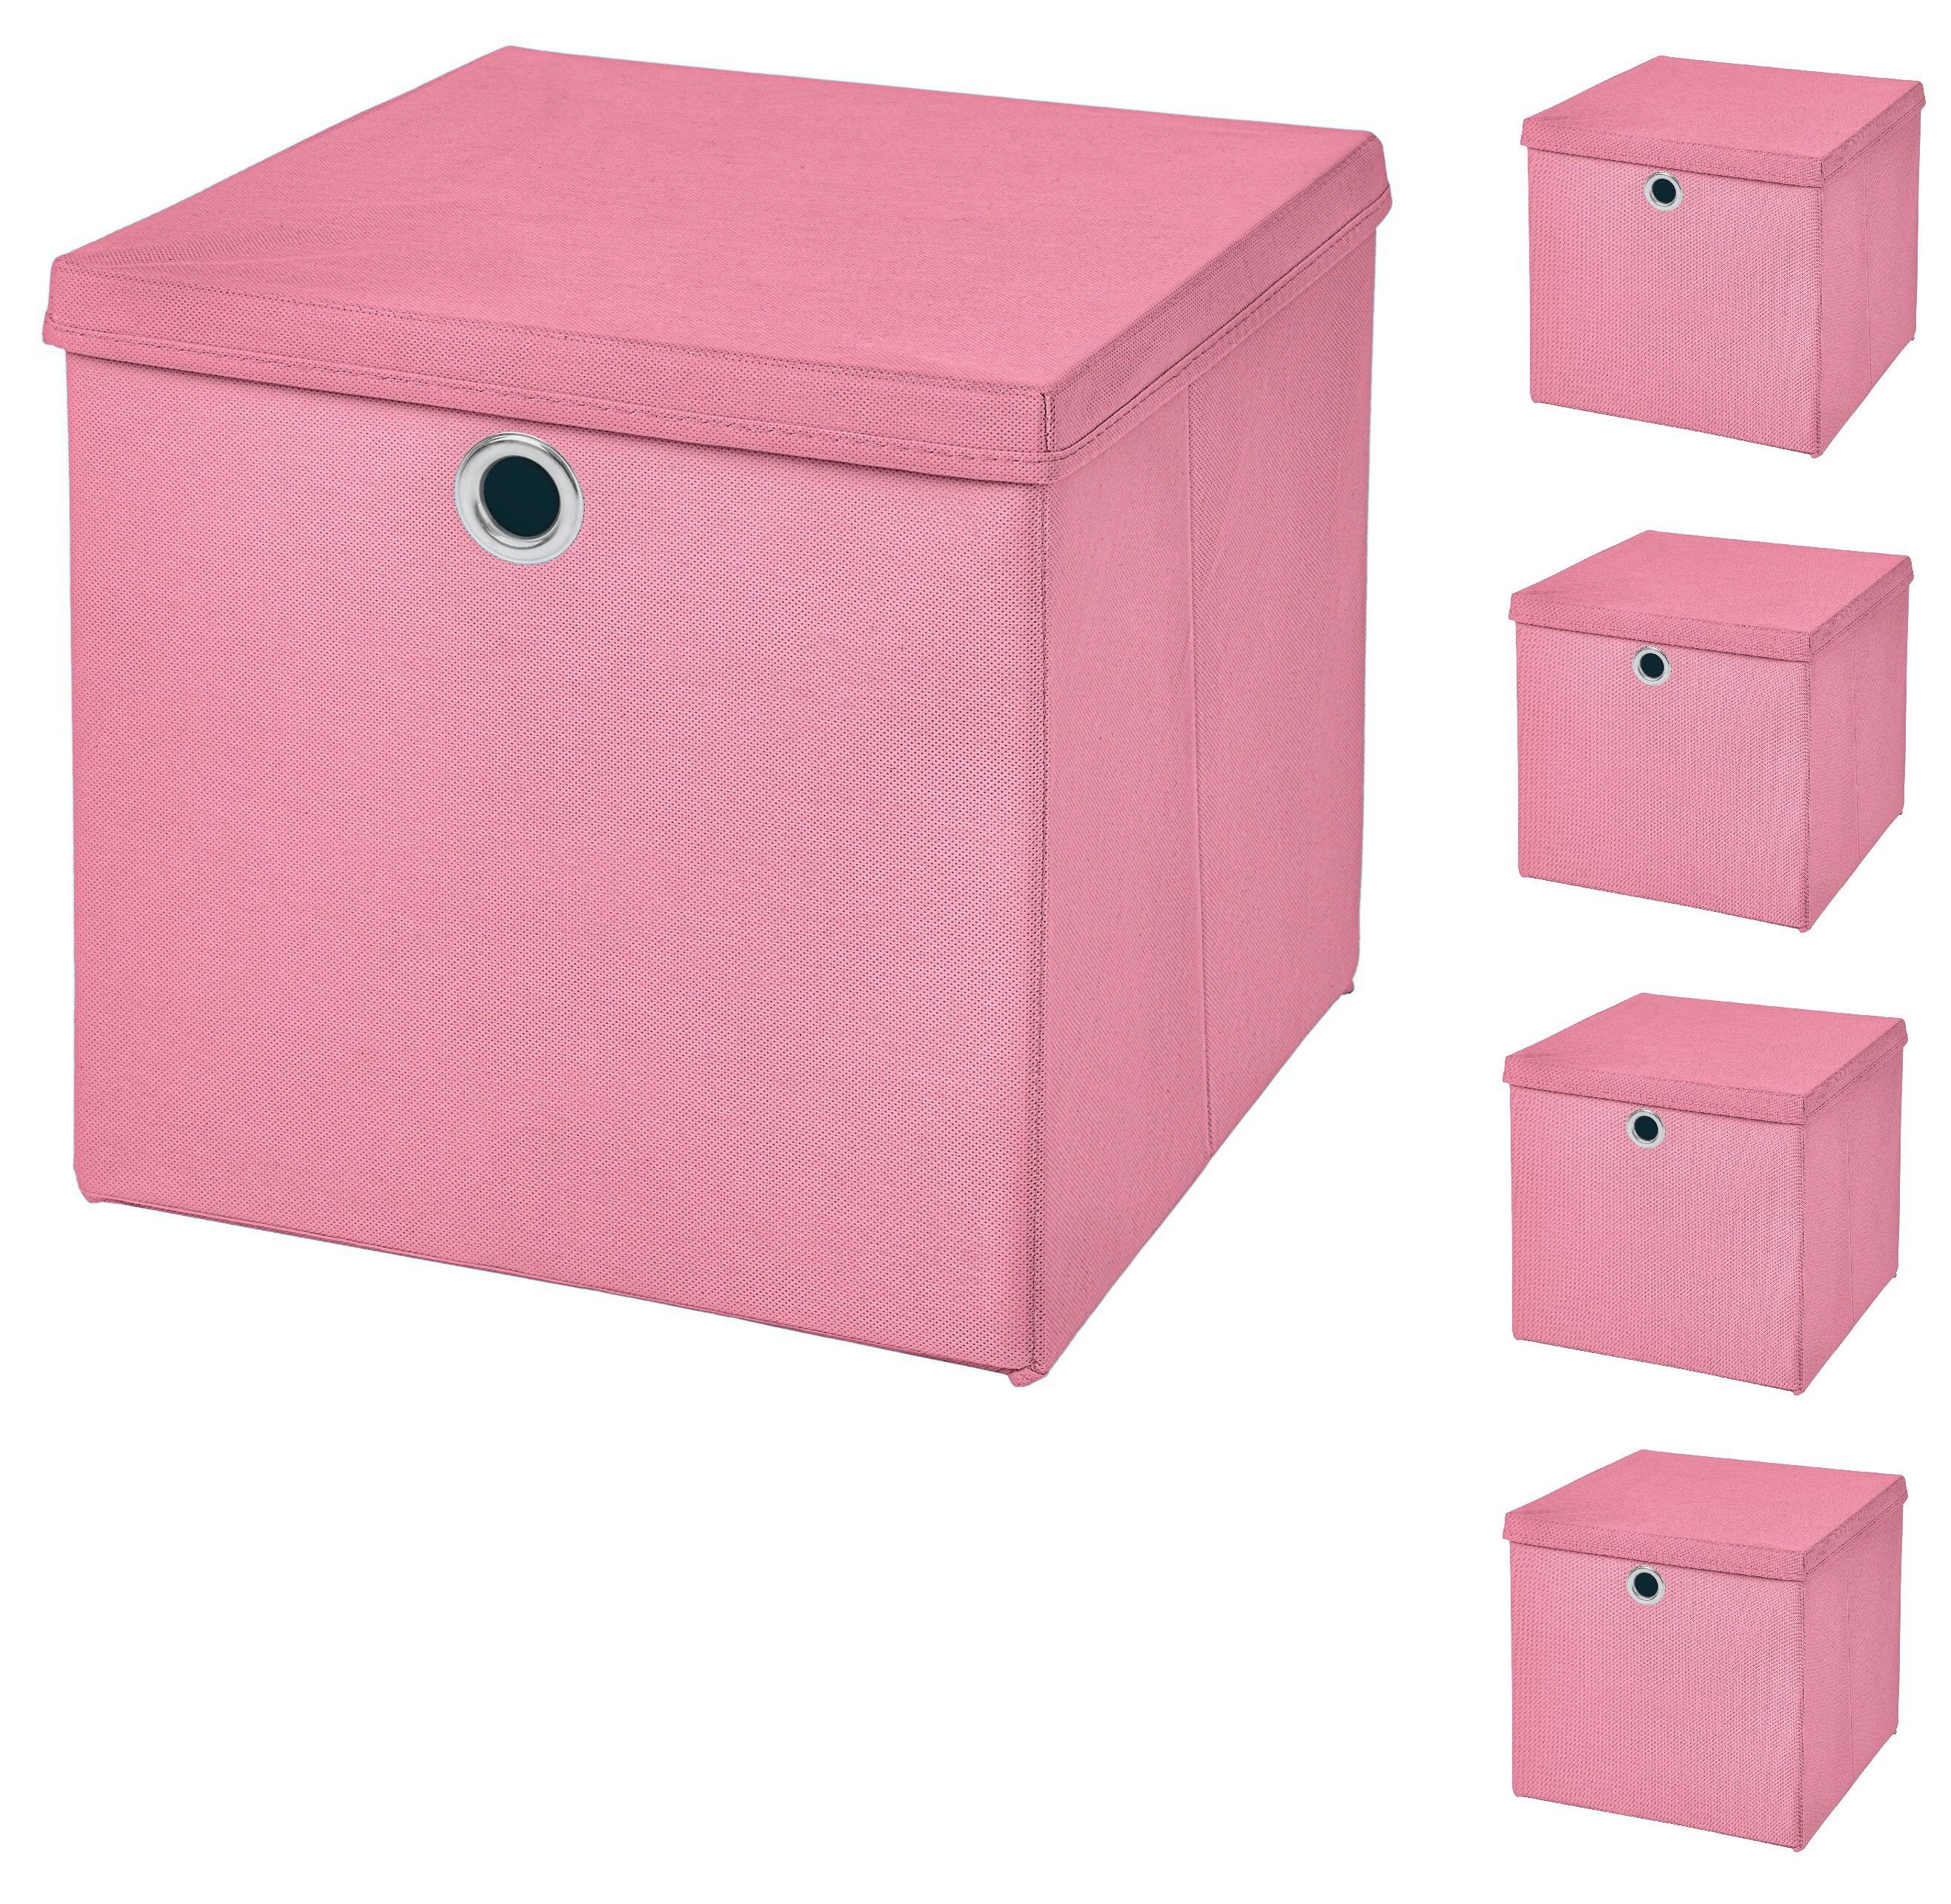 StickandShine Faltbox 5 Stück Faltboxen 28 x 28 x 28 cm faltbar mit Deckel Aufbewahrungsbox in verschiedenen Farben (5er SET 28x28x28) 28cm